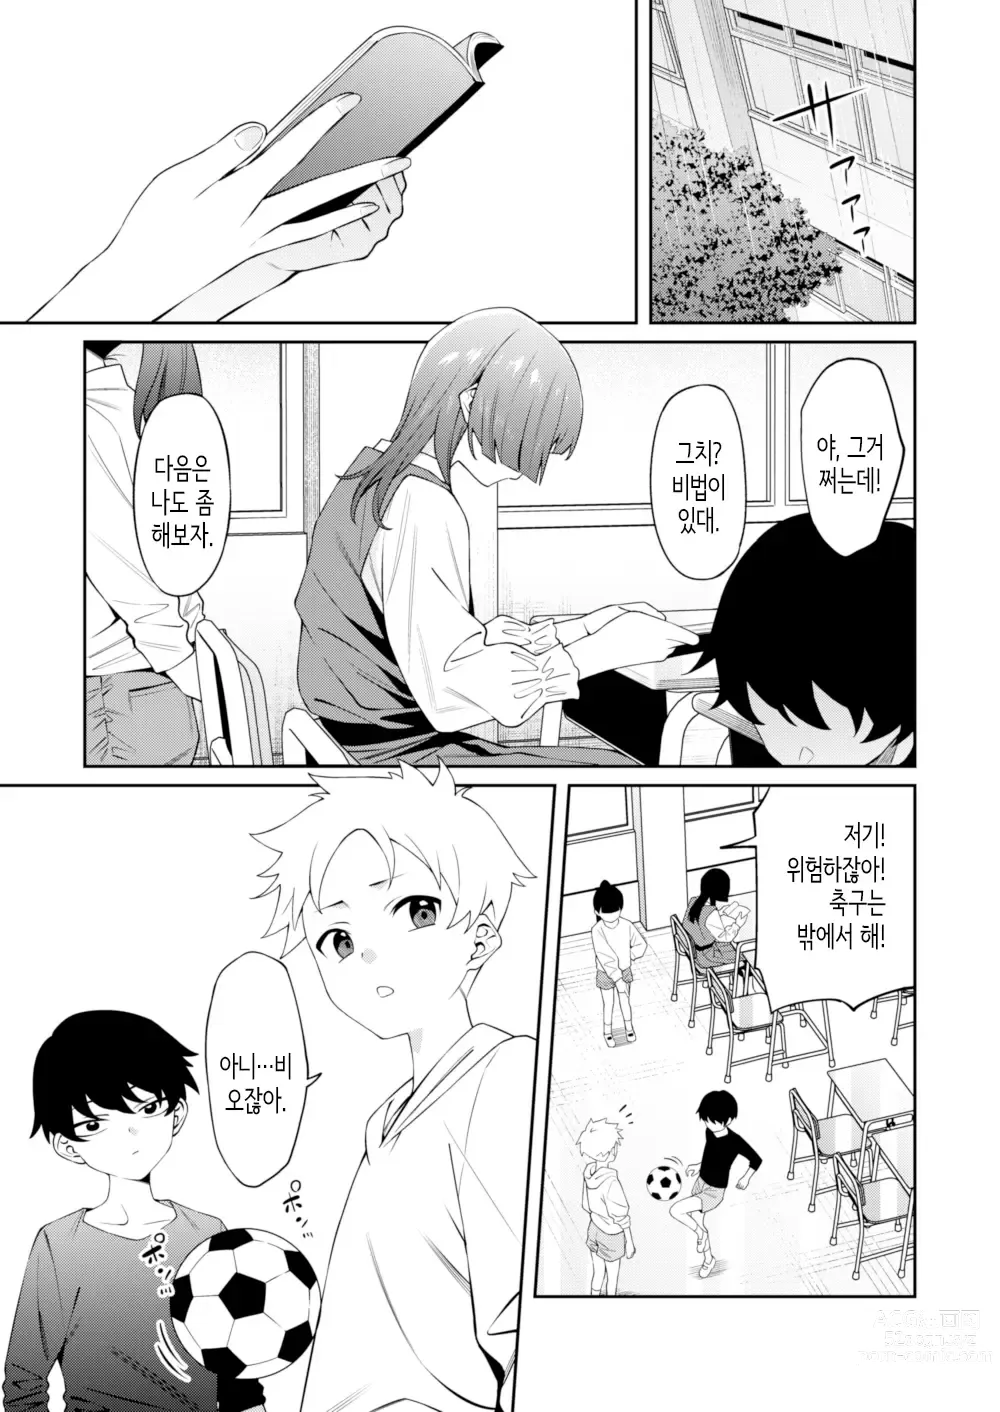 Page 2 of doujinshi 스미레 쨩은 머리가 좋다.